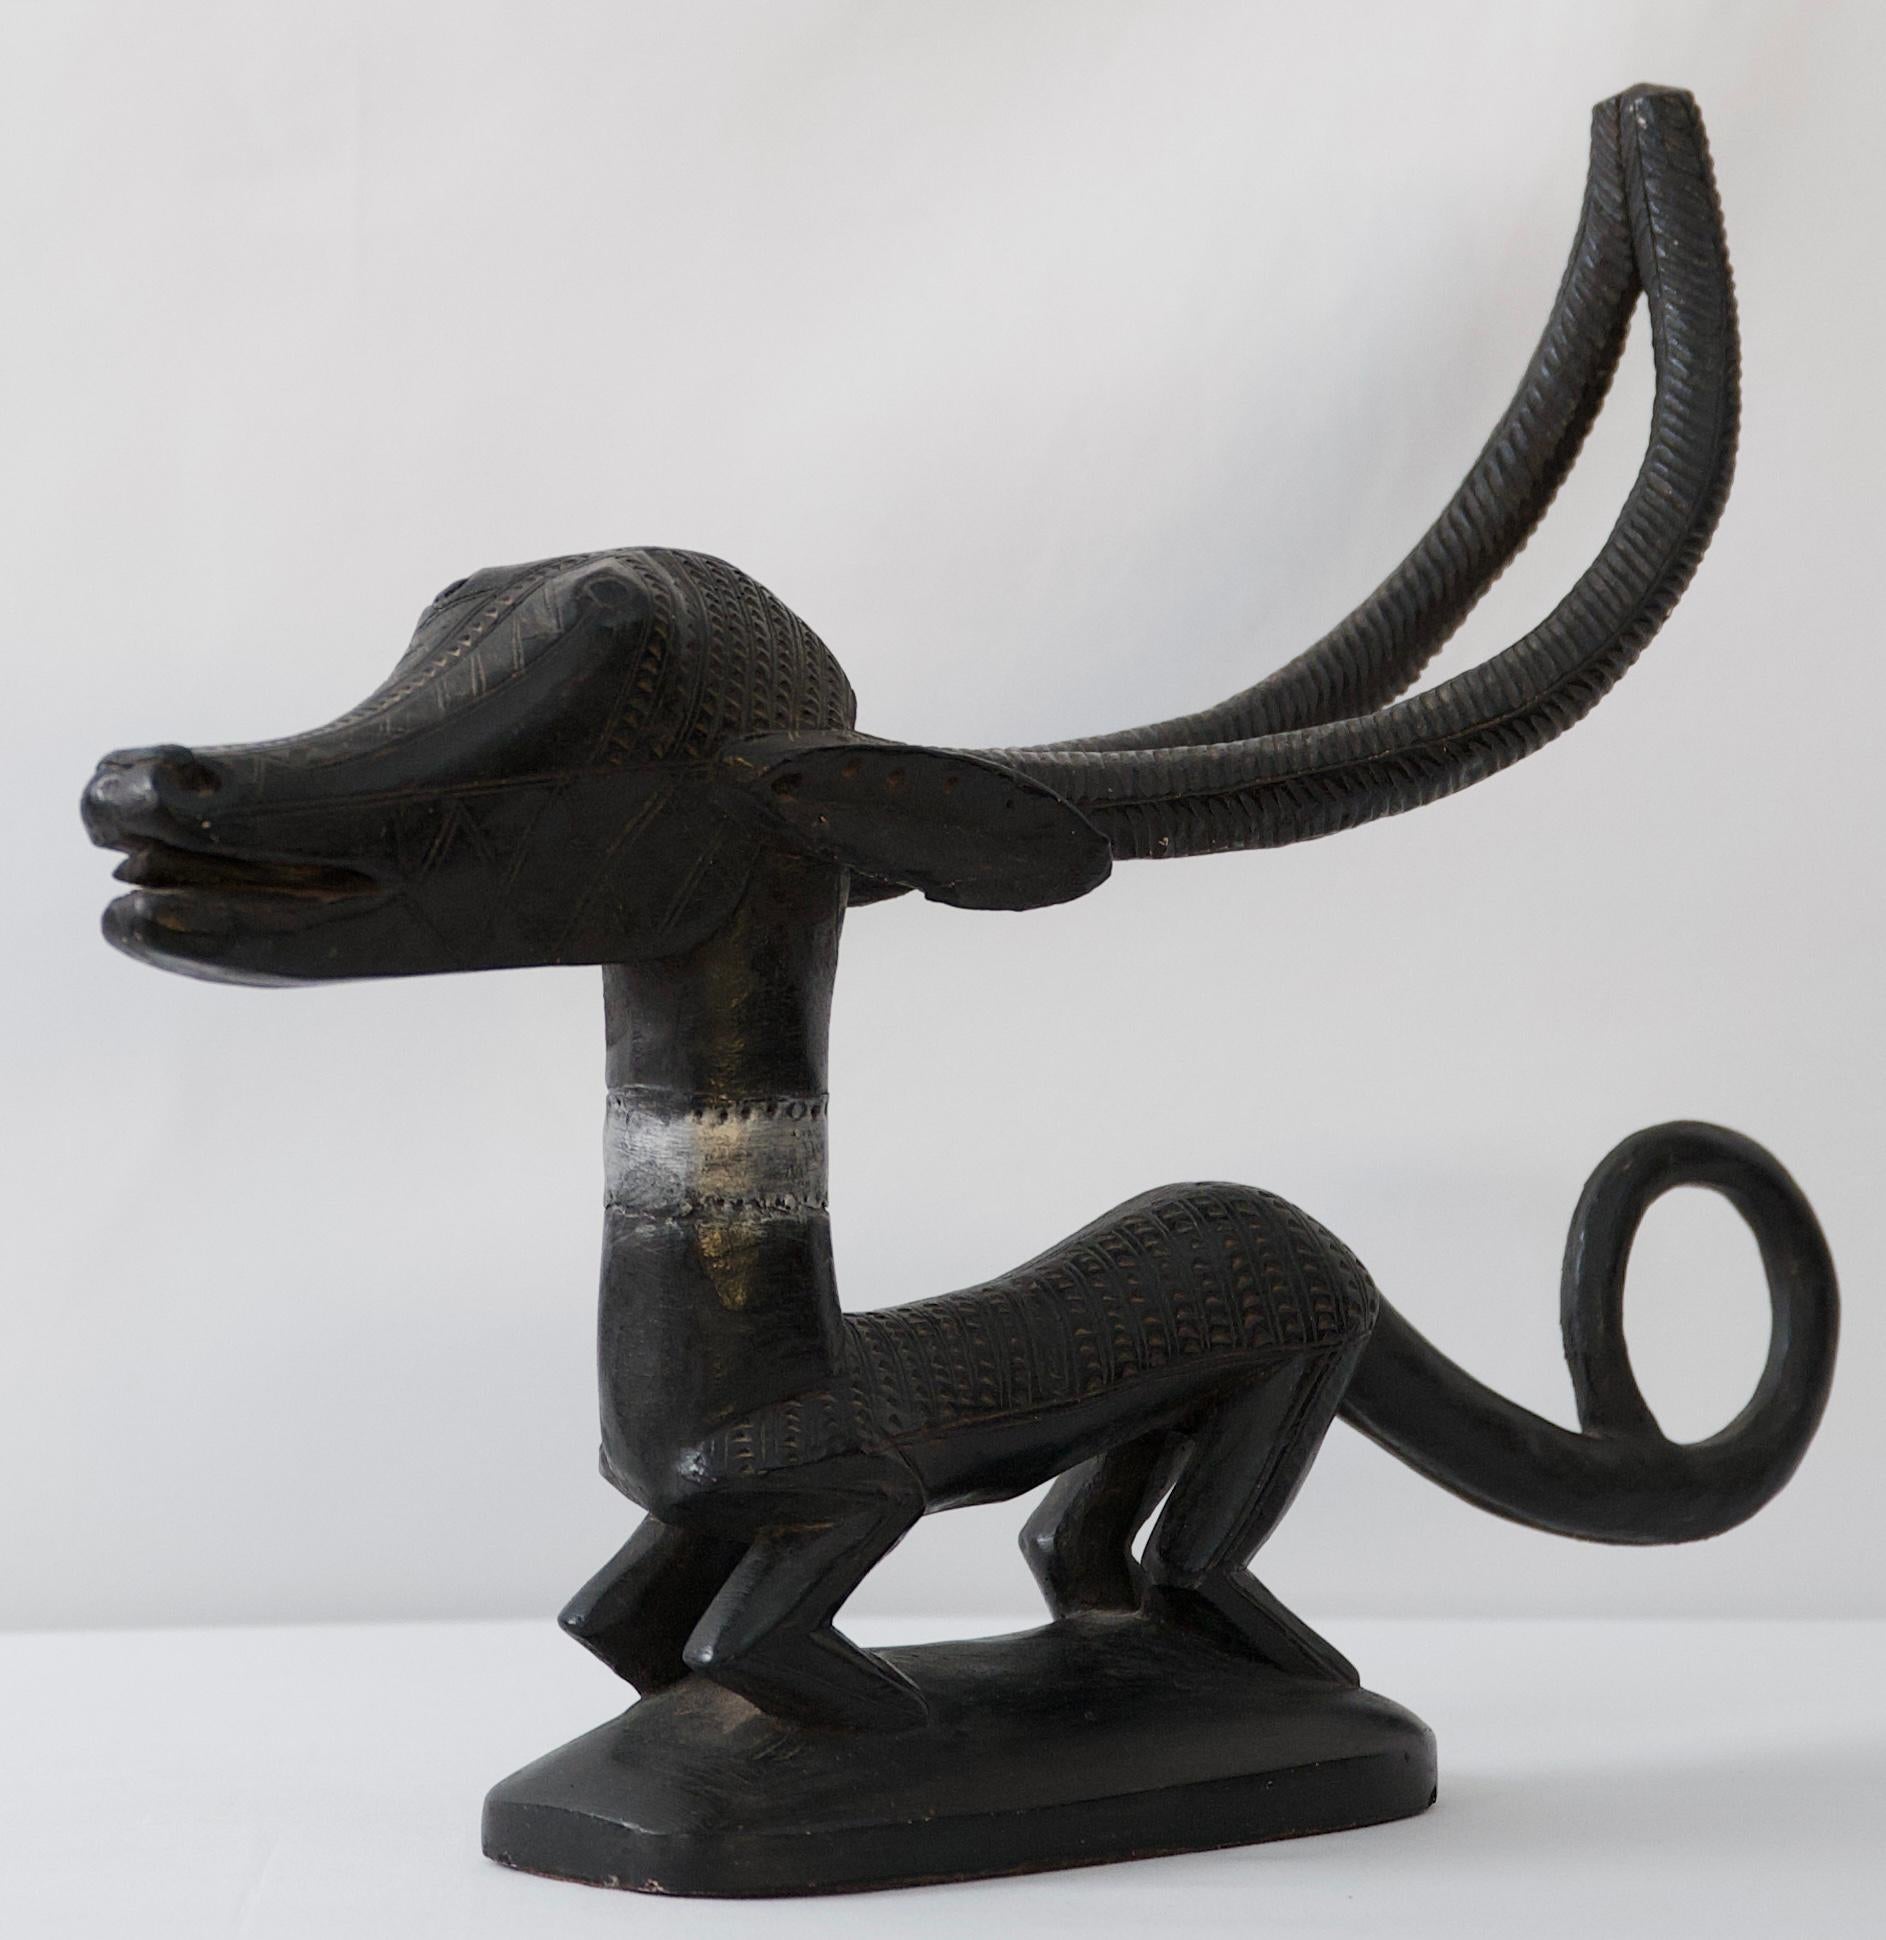 Eine skurrile Darstellung eines afrikanischen mythischen Hundes, geschaffen von einem Künstler für Austin Productions. 

Diese auffällige dekorative Tierskulptur ist aus einer Mischung aus Stein und Gips gefertigt. Würde jede Umgebung aufwerten.